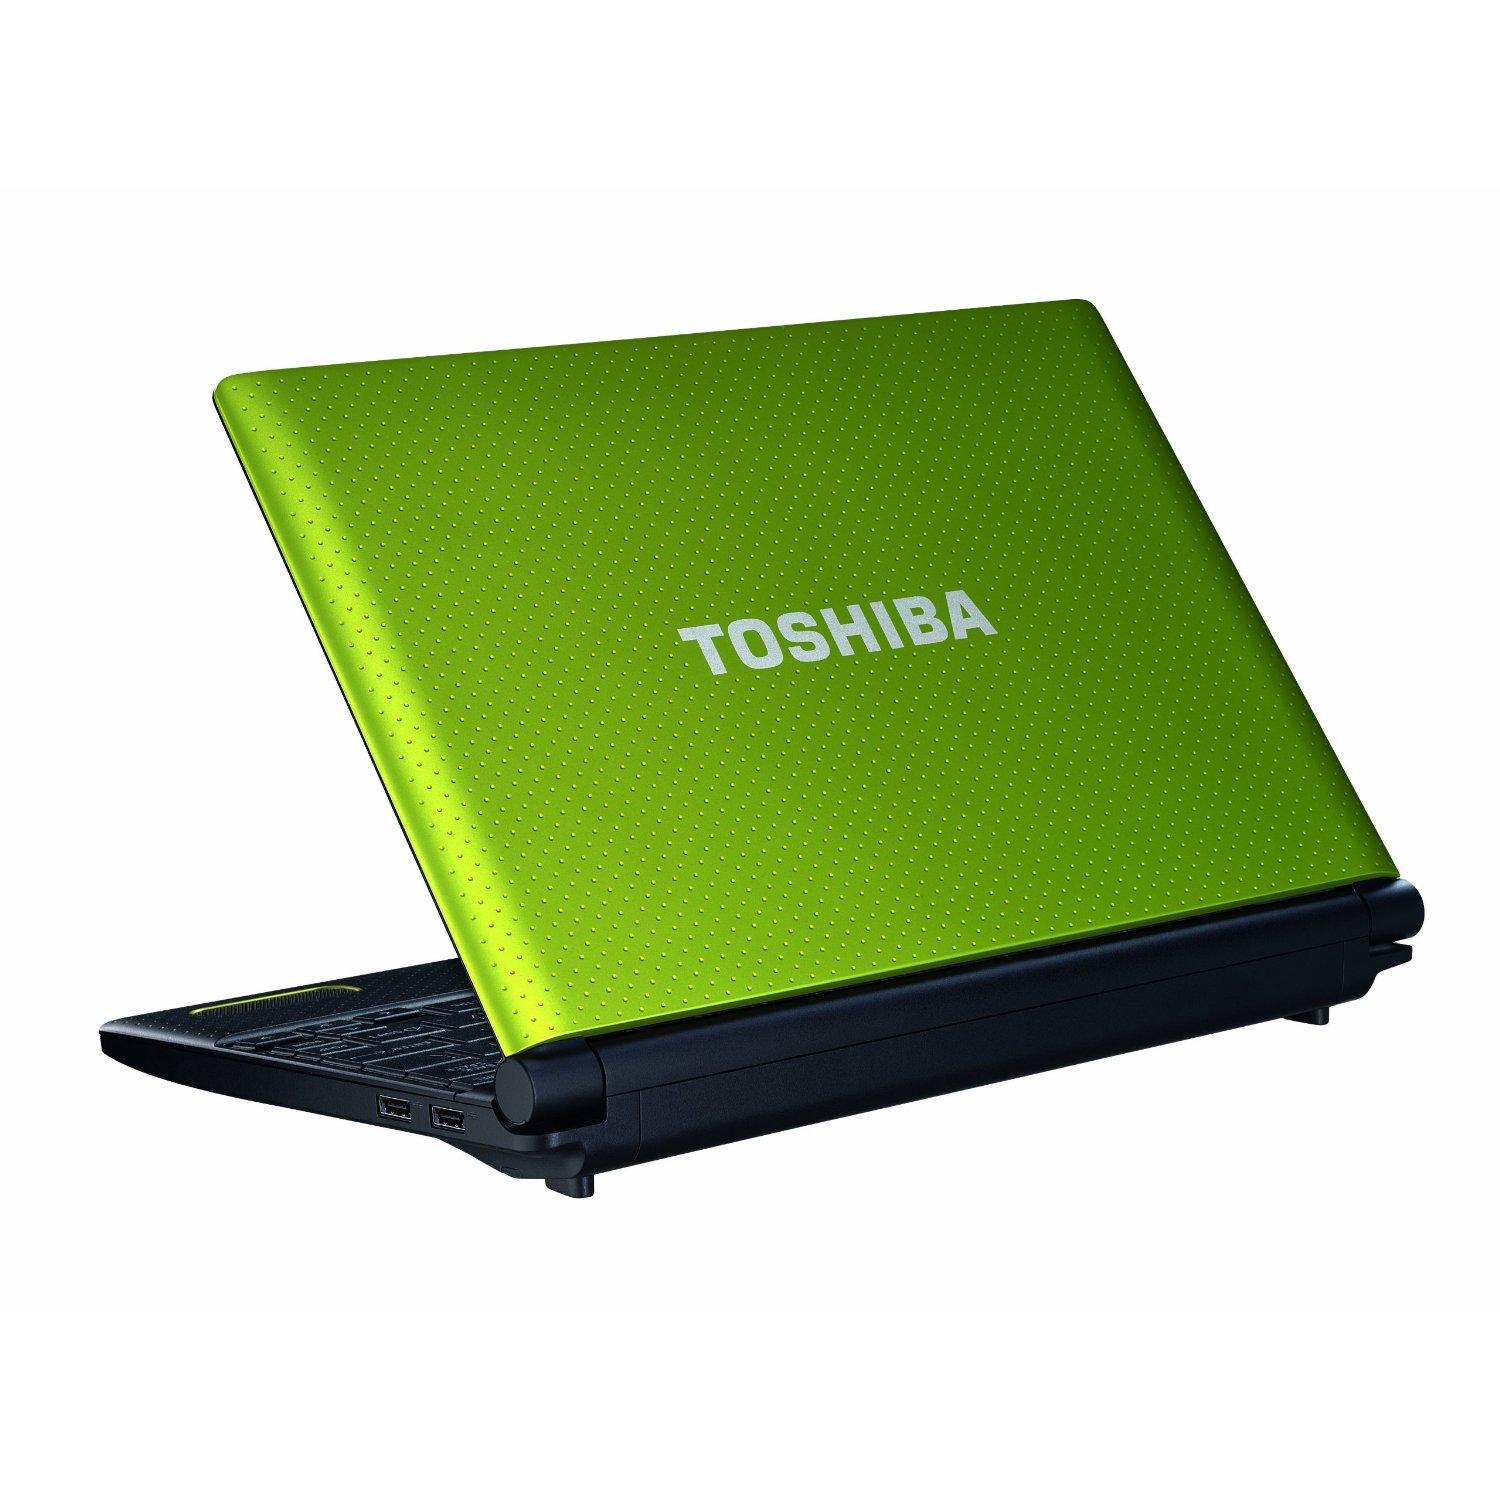 Toshiba NB520-10U